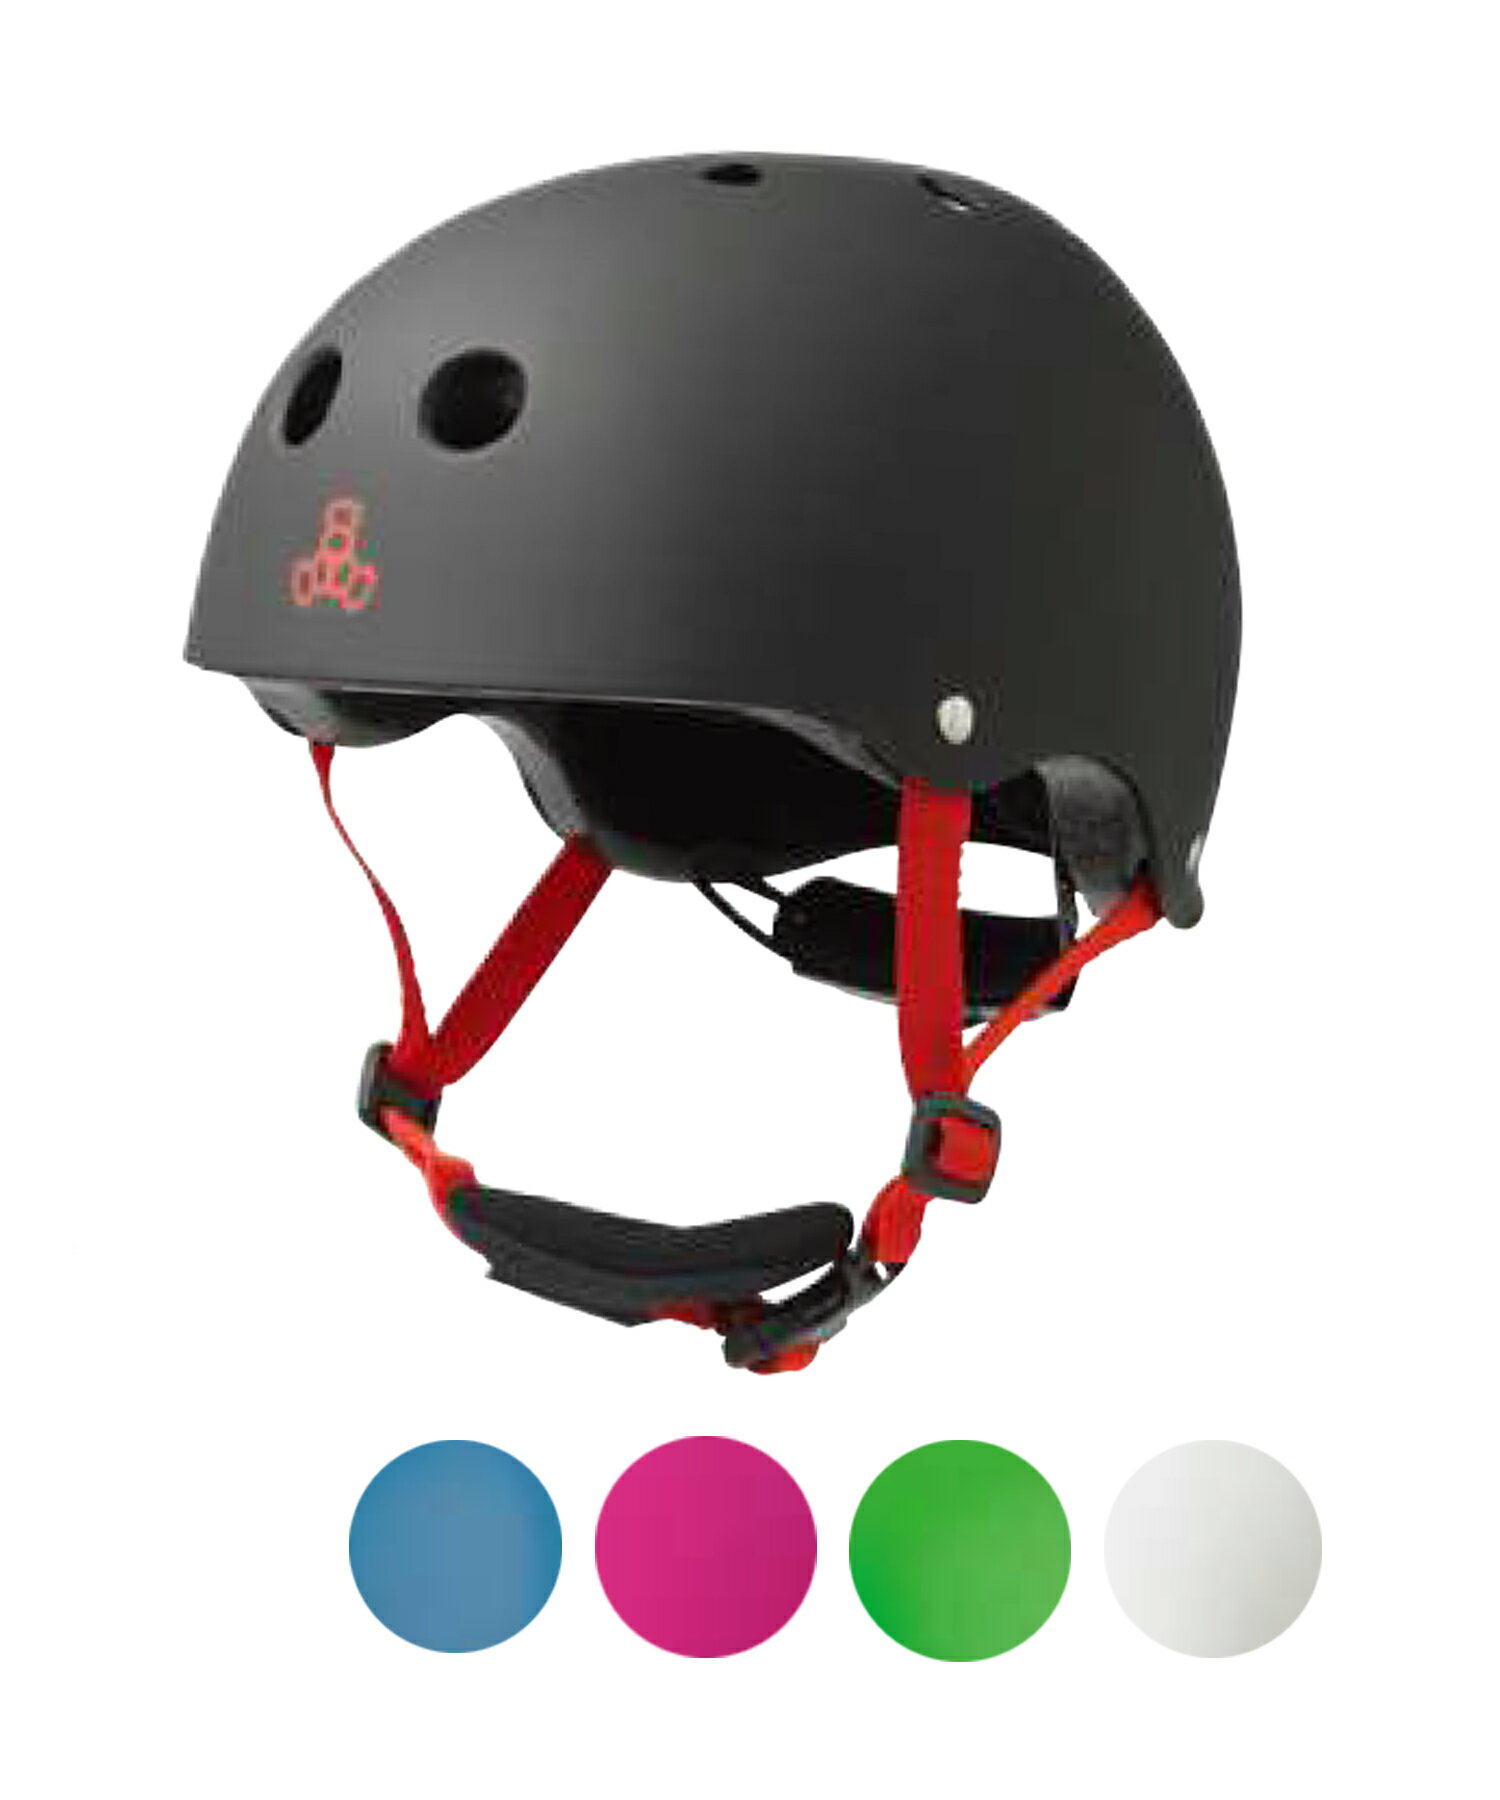 【triple eight】トリプル エイトのヘルメット。かわいいライダーにはLIL8。TRIPLE8の保護機能をそのままに、サイズ調整可能のフィットダイヤルシステムバックルを備えた子供に優しい機能付きヘルメット≪商品詳細≫■特徴■・安全基準US CPSC Bike, ASTM Skate・交換、洗濯可能なパッド付属・ダイアルでサイズ調整可能・顎もカバーするパッド搭載ストラップ■対象年齢■・幼児から5歳児まで■サイズ根安■・46-52cm